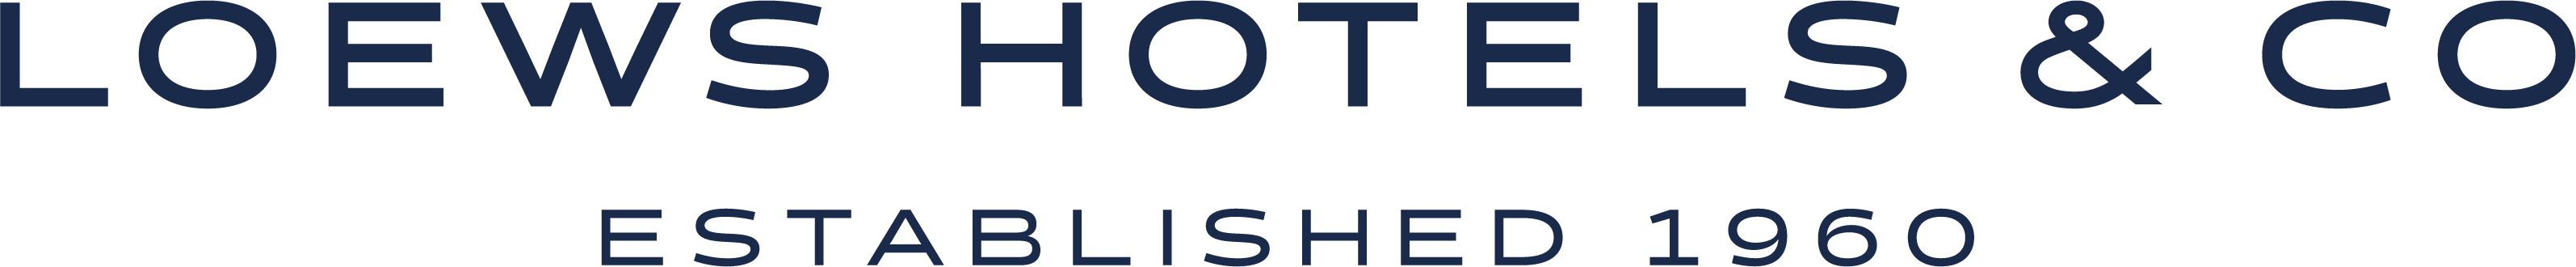 Loews Hotels Established 1960 Navy Blue Text Logo